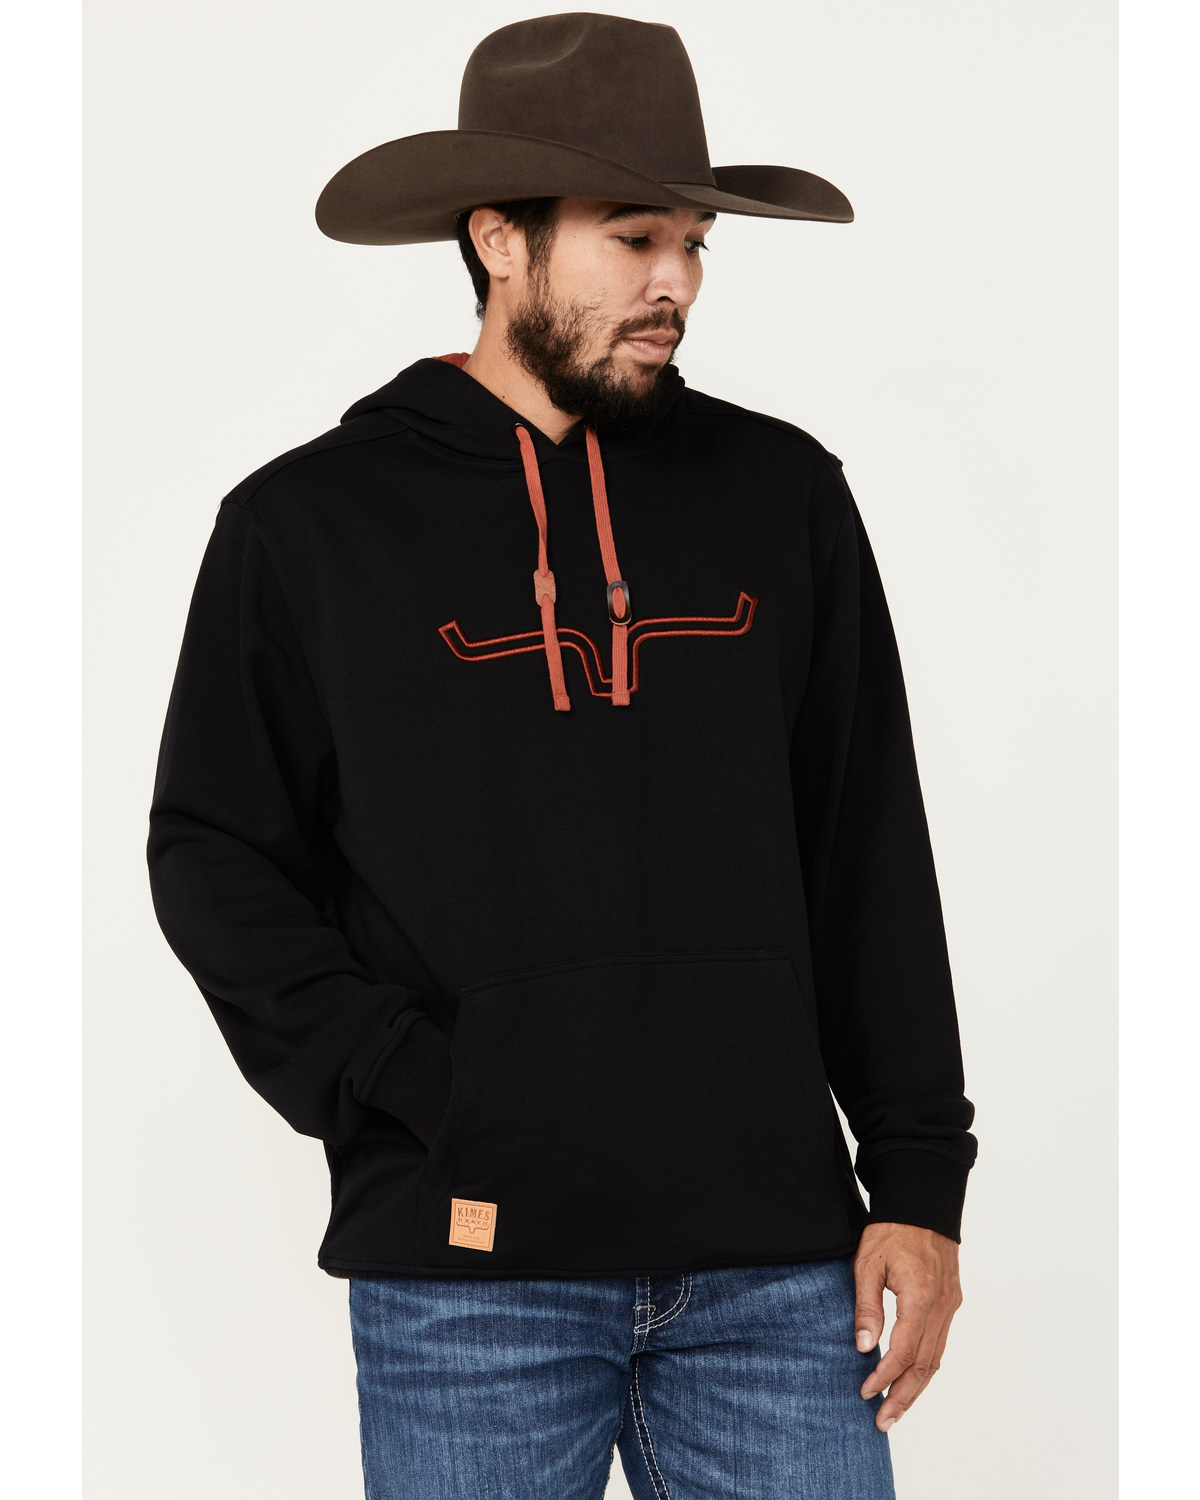 Kimes Ranch Men's Fast Talker Hooded Sweatshirt